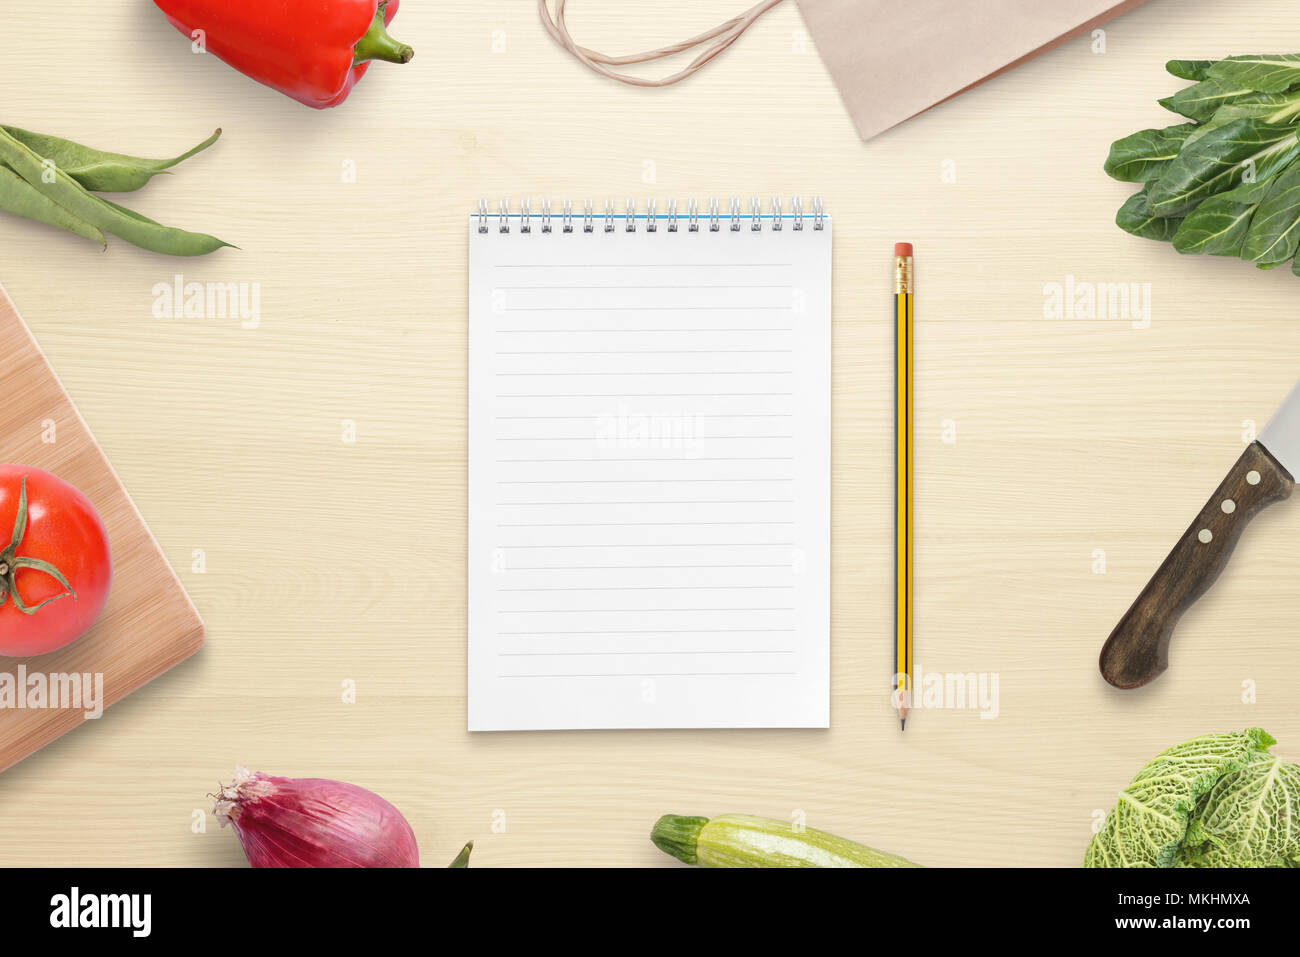 Papier et crayon pour la recette ou la liste des ingrédients. Table de cuisine avec couteau, cuting, sac de marché et les légumes. Banque D'Images